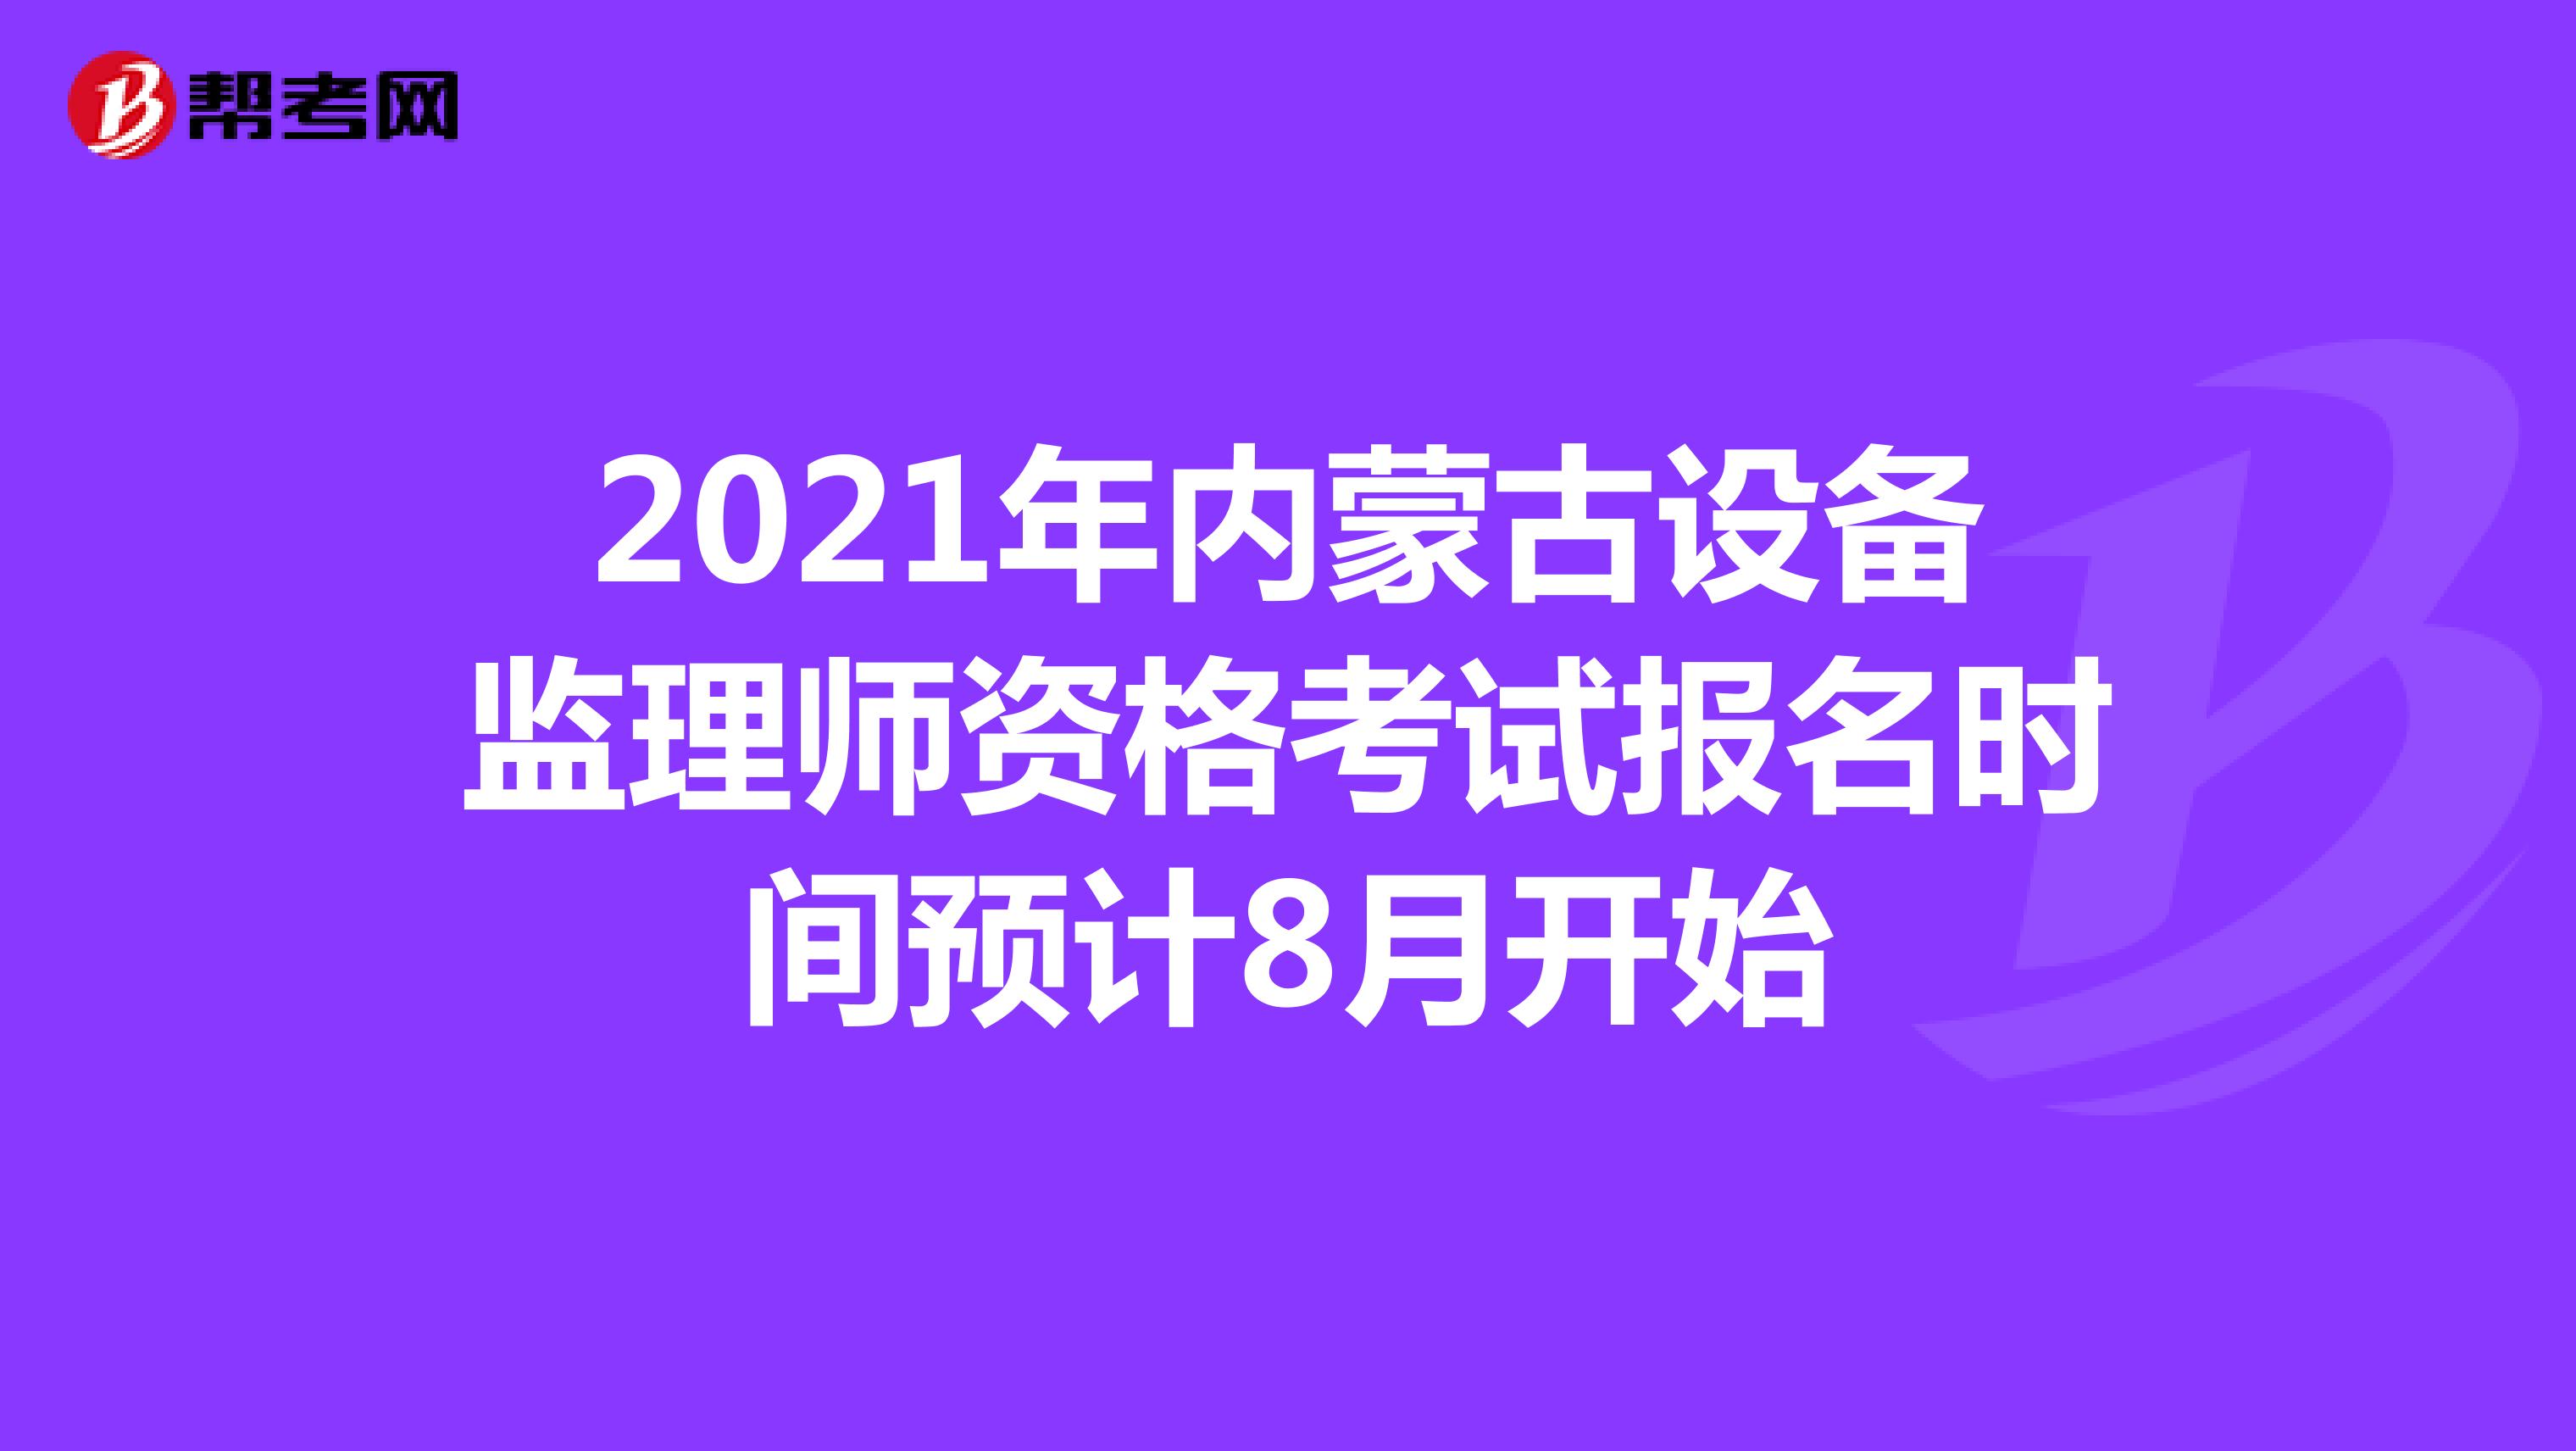 2021年内蒙古设备监理师资格考试报名时间预计8月开始